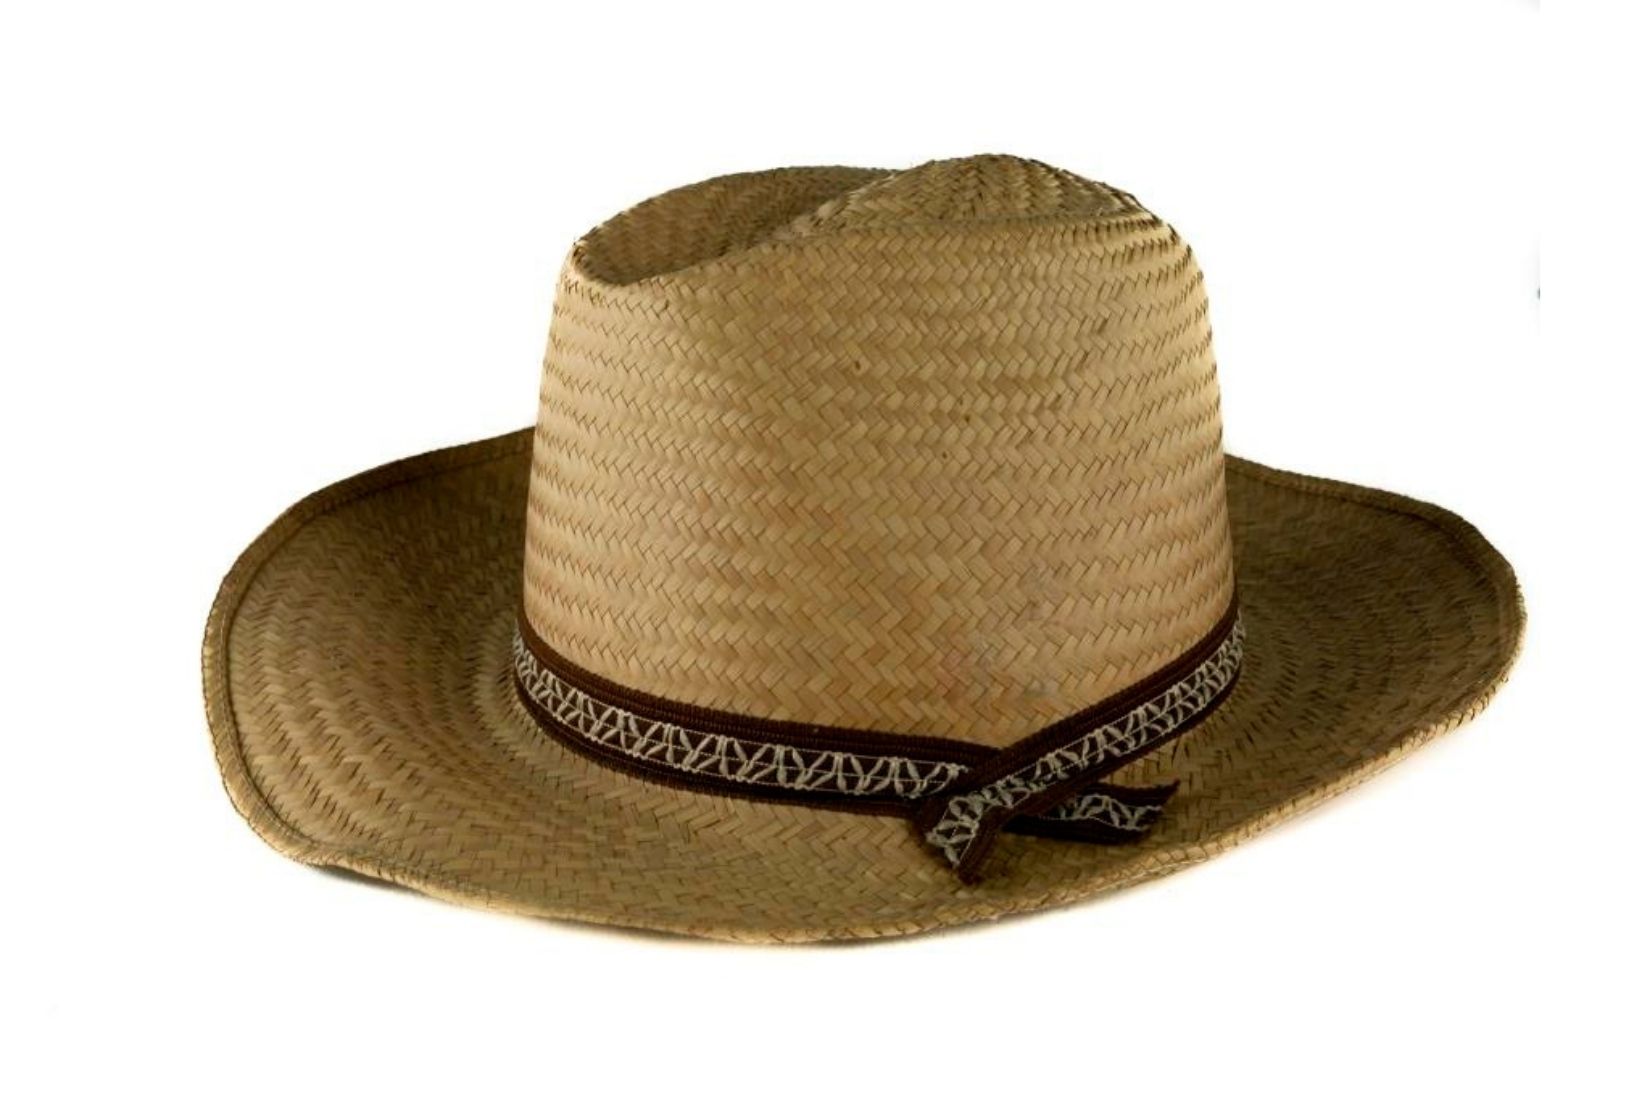 Sombrero de palma tejida natural. Artesano y procedencia desconocidos. Col. Populart. (Foto: EKV).